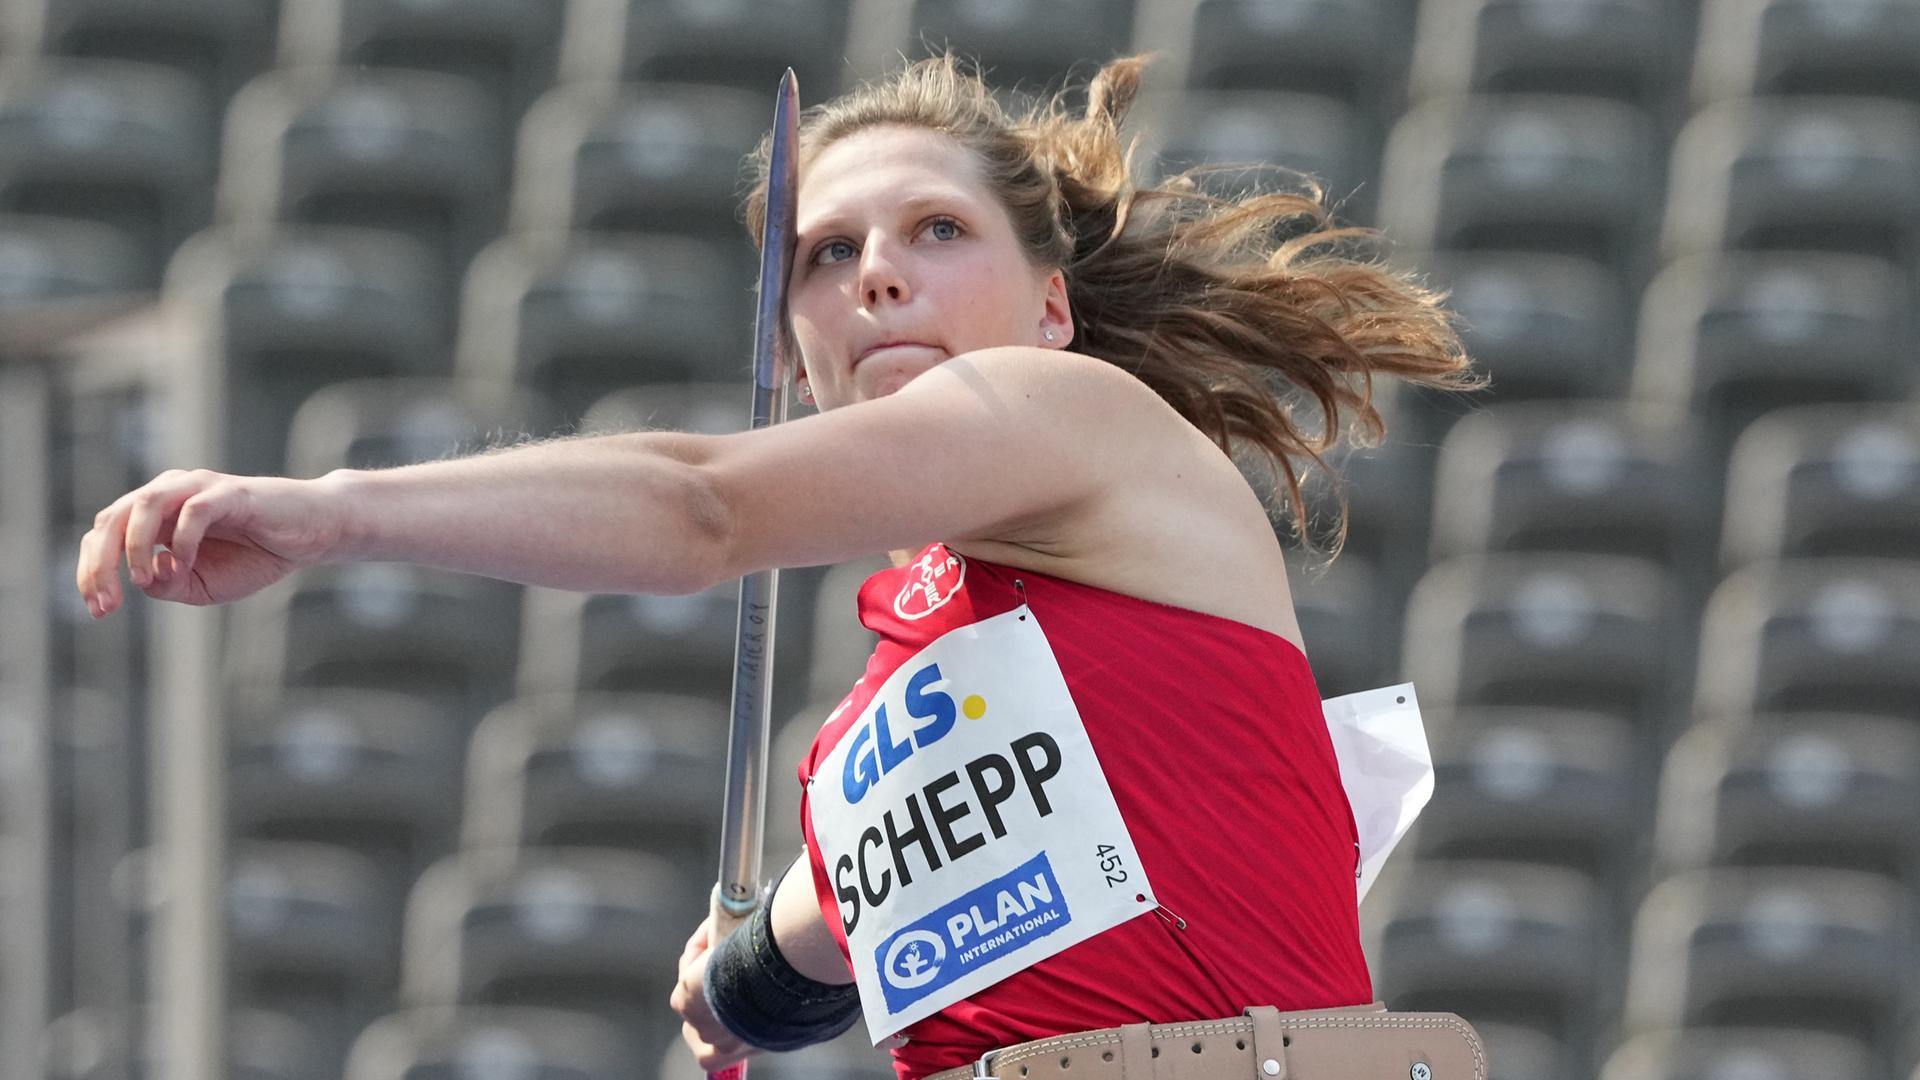 Leichtathletik: Deutsche Meisterschaft, Entscheidungen, Speerwerfen Frauen: Josefa Schepp, TSG Bayer 04 Leverkusen, belegt den siebenten Platz.